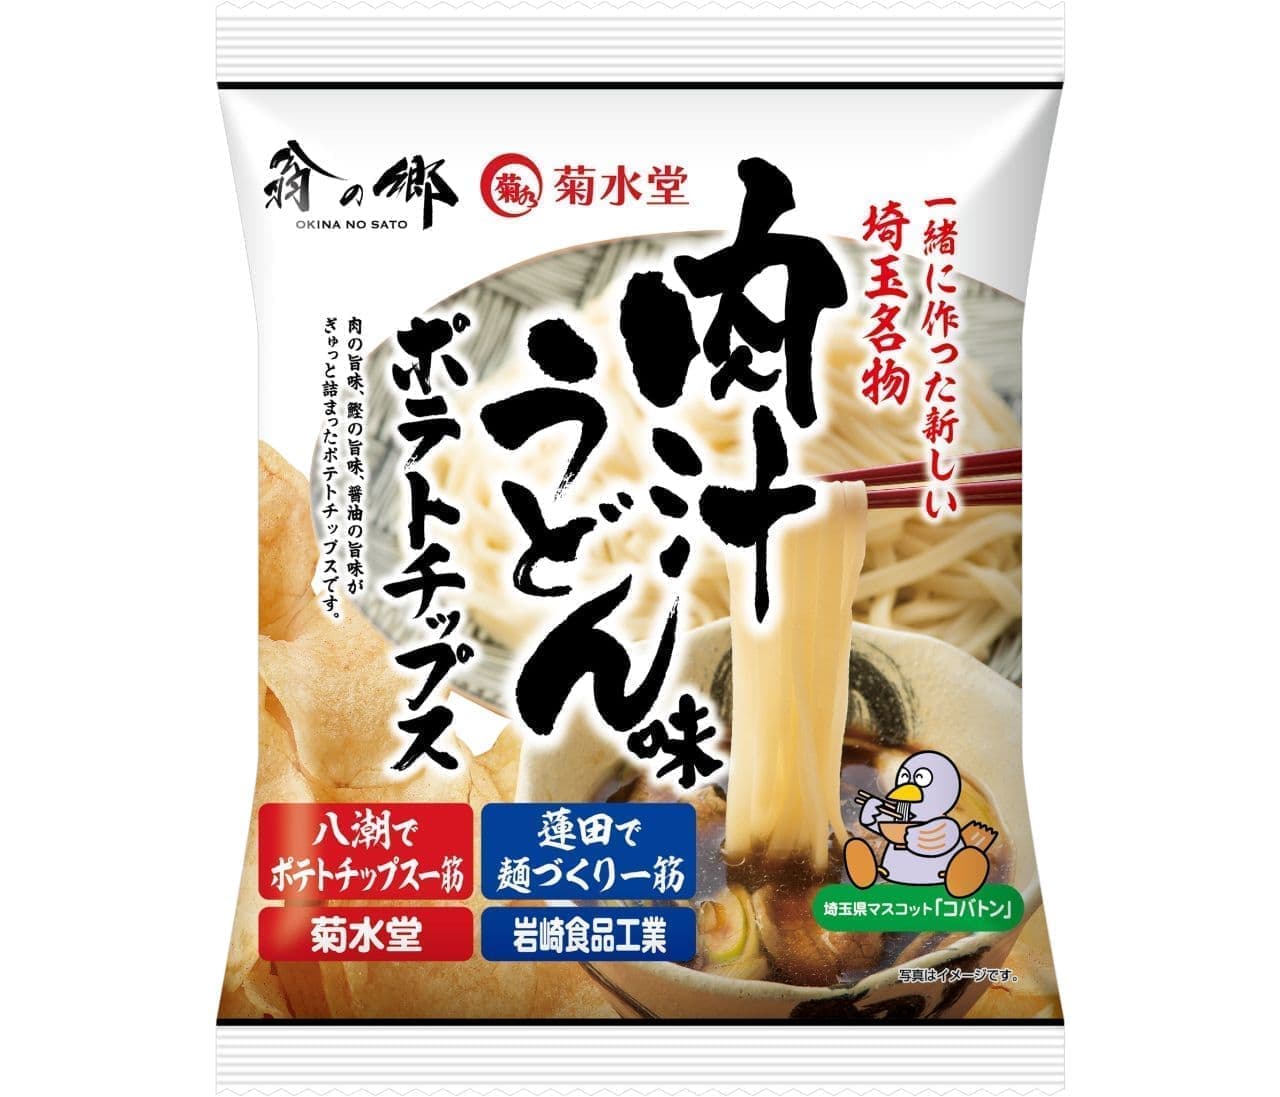 新埼玉名物を目指す「肉汁うどん味ポテトチップス」